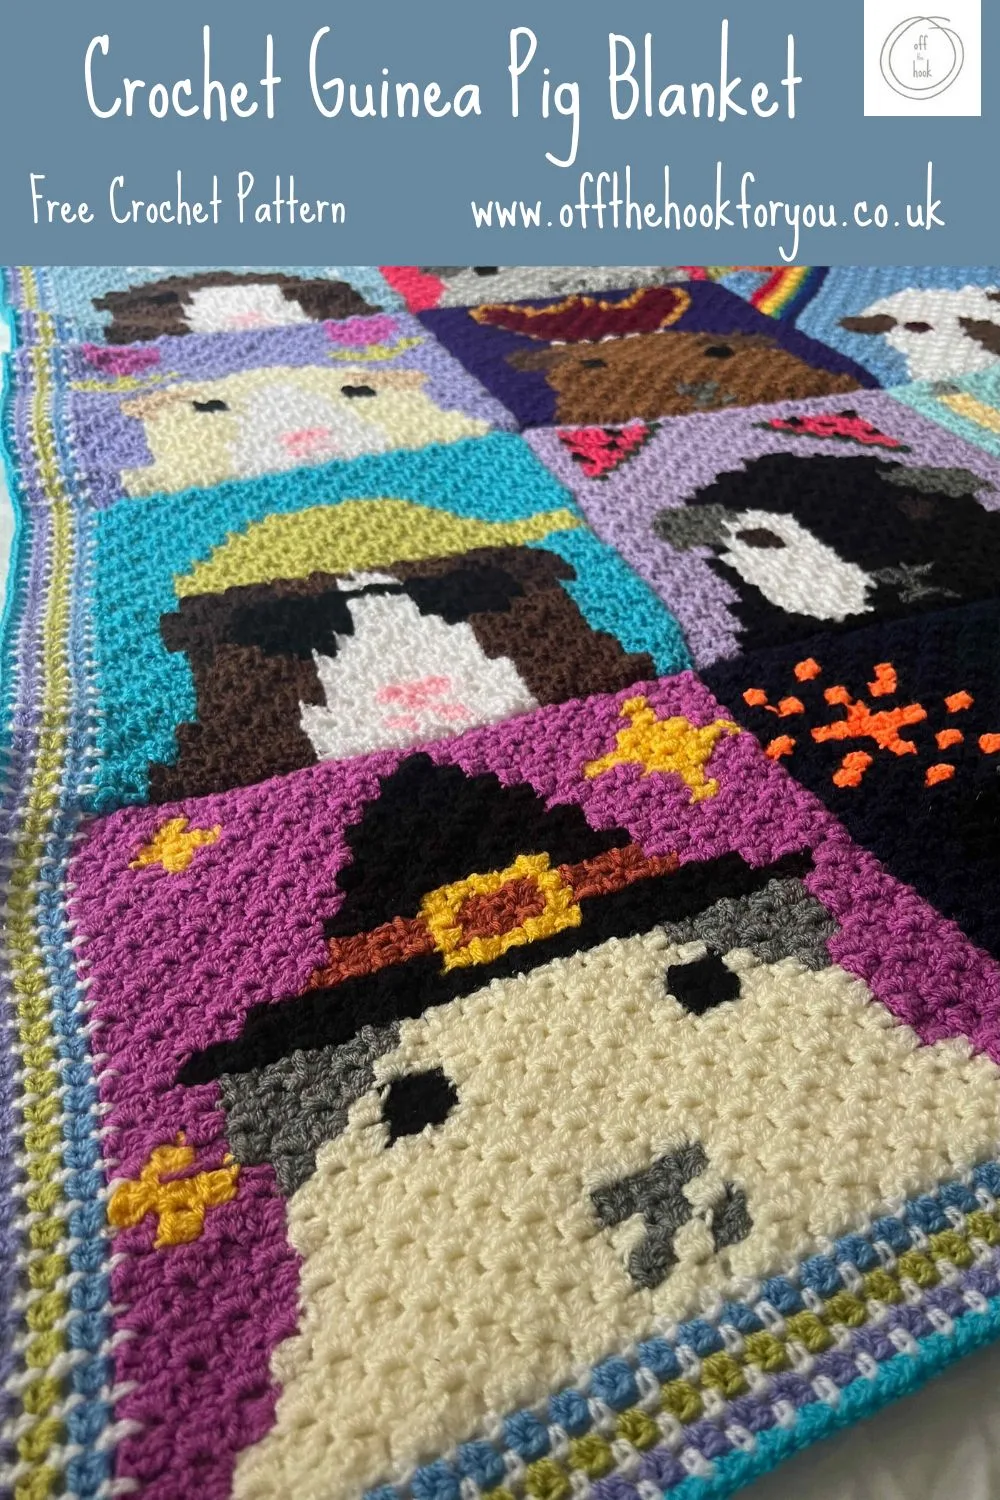 Crochet Guinea pig blanket